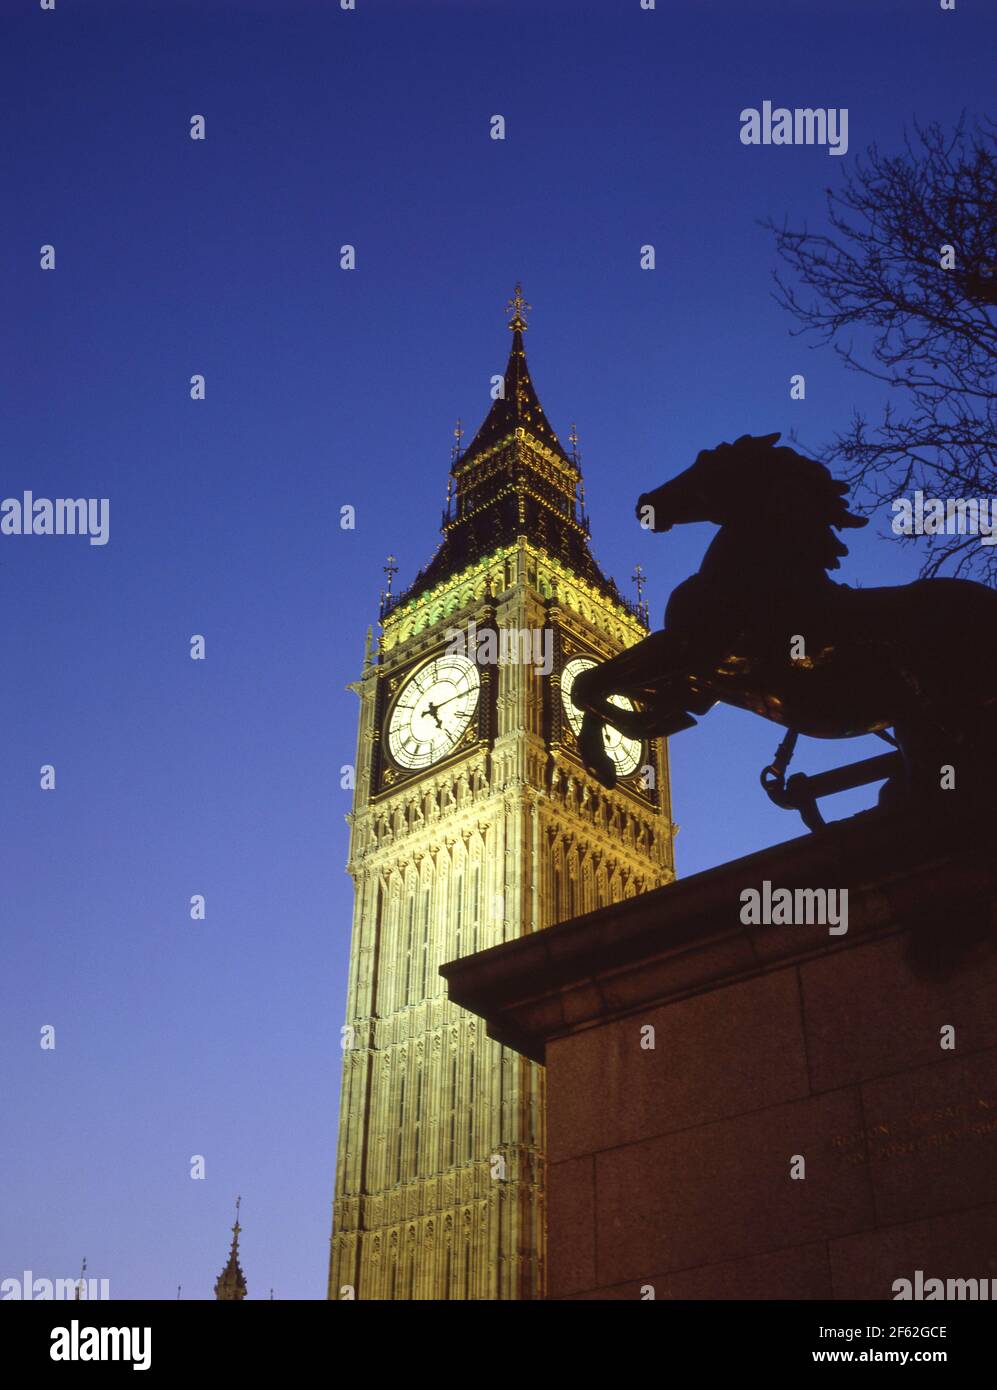 Tour de l'horloge de Big Ben et statue de Boudicca au crépuscule depuis le pont de Westminster, Cité de Westminster, Grand Londres, Angleterre, Royaume-Uni Banque D'Images